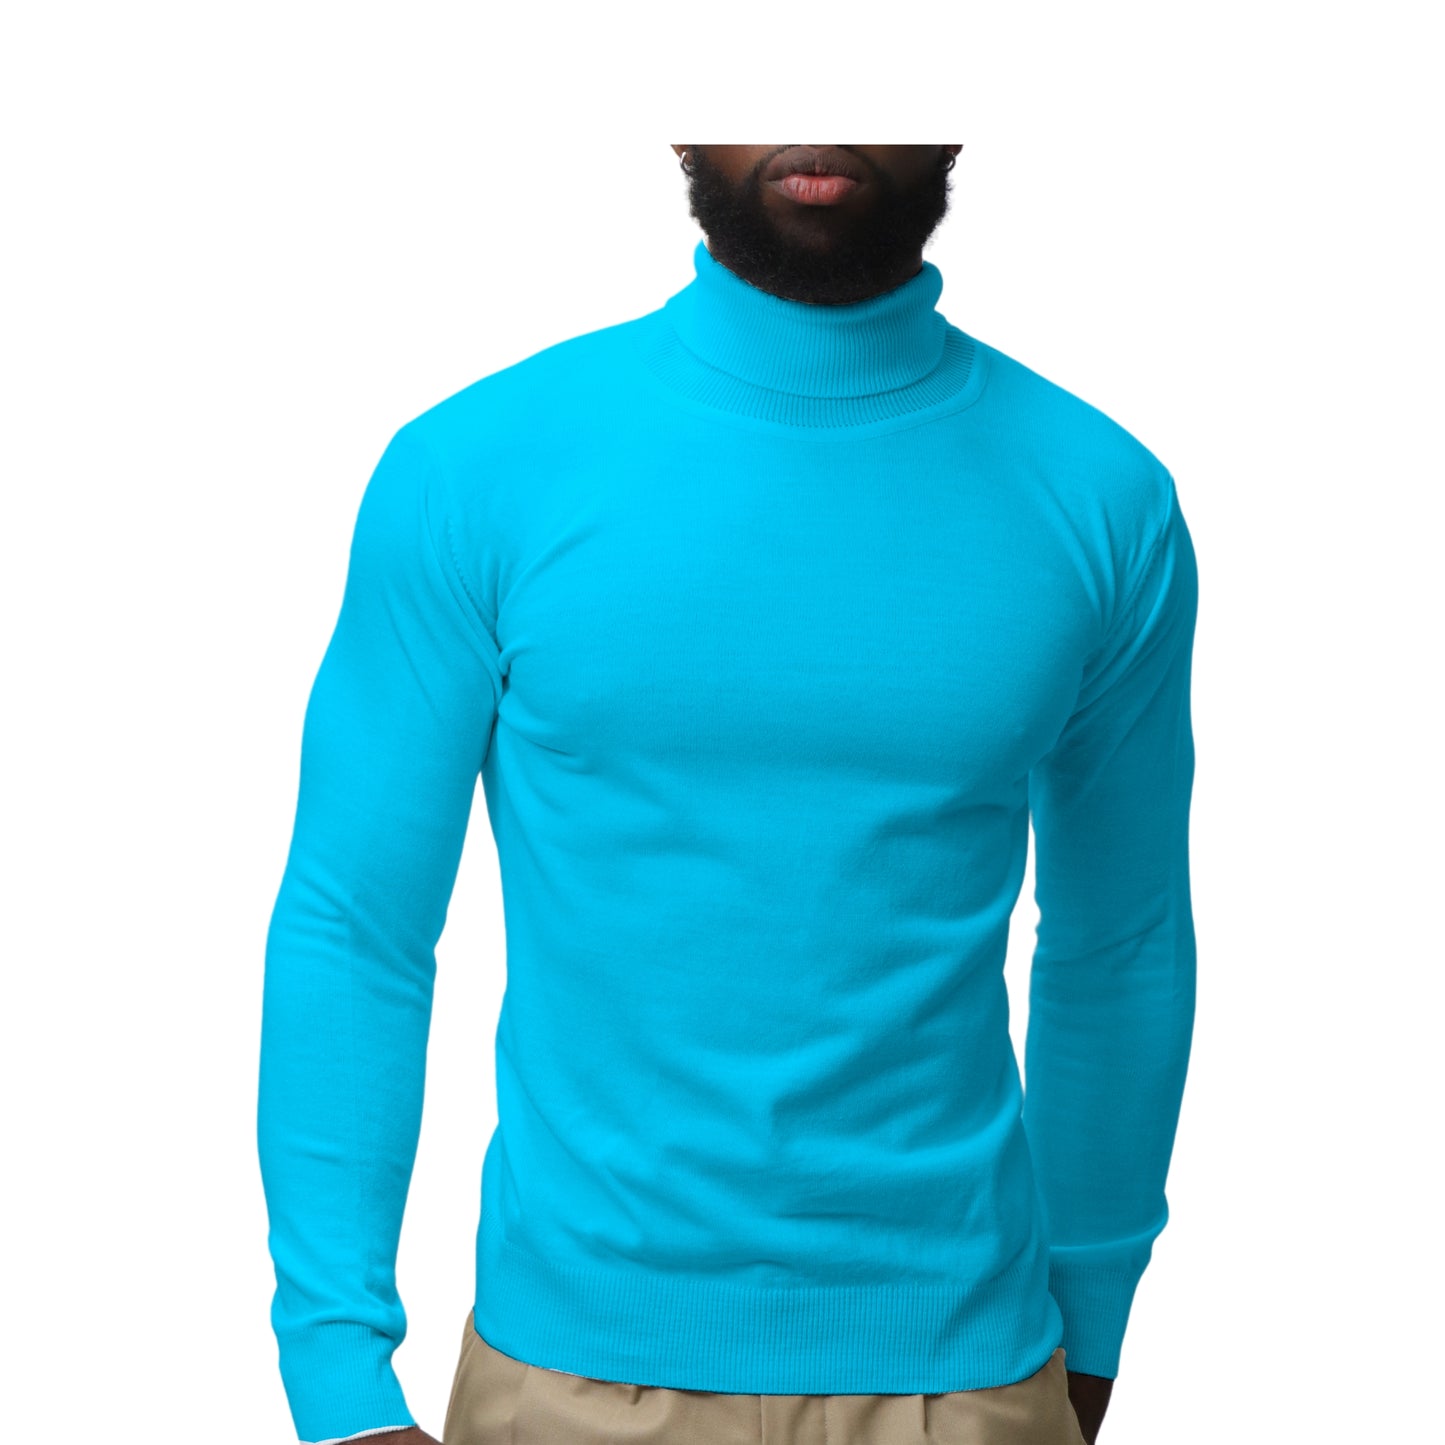 Modern Fit Turtleneck Sweaters